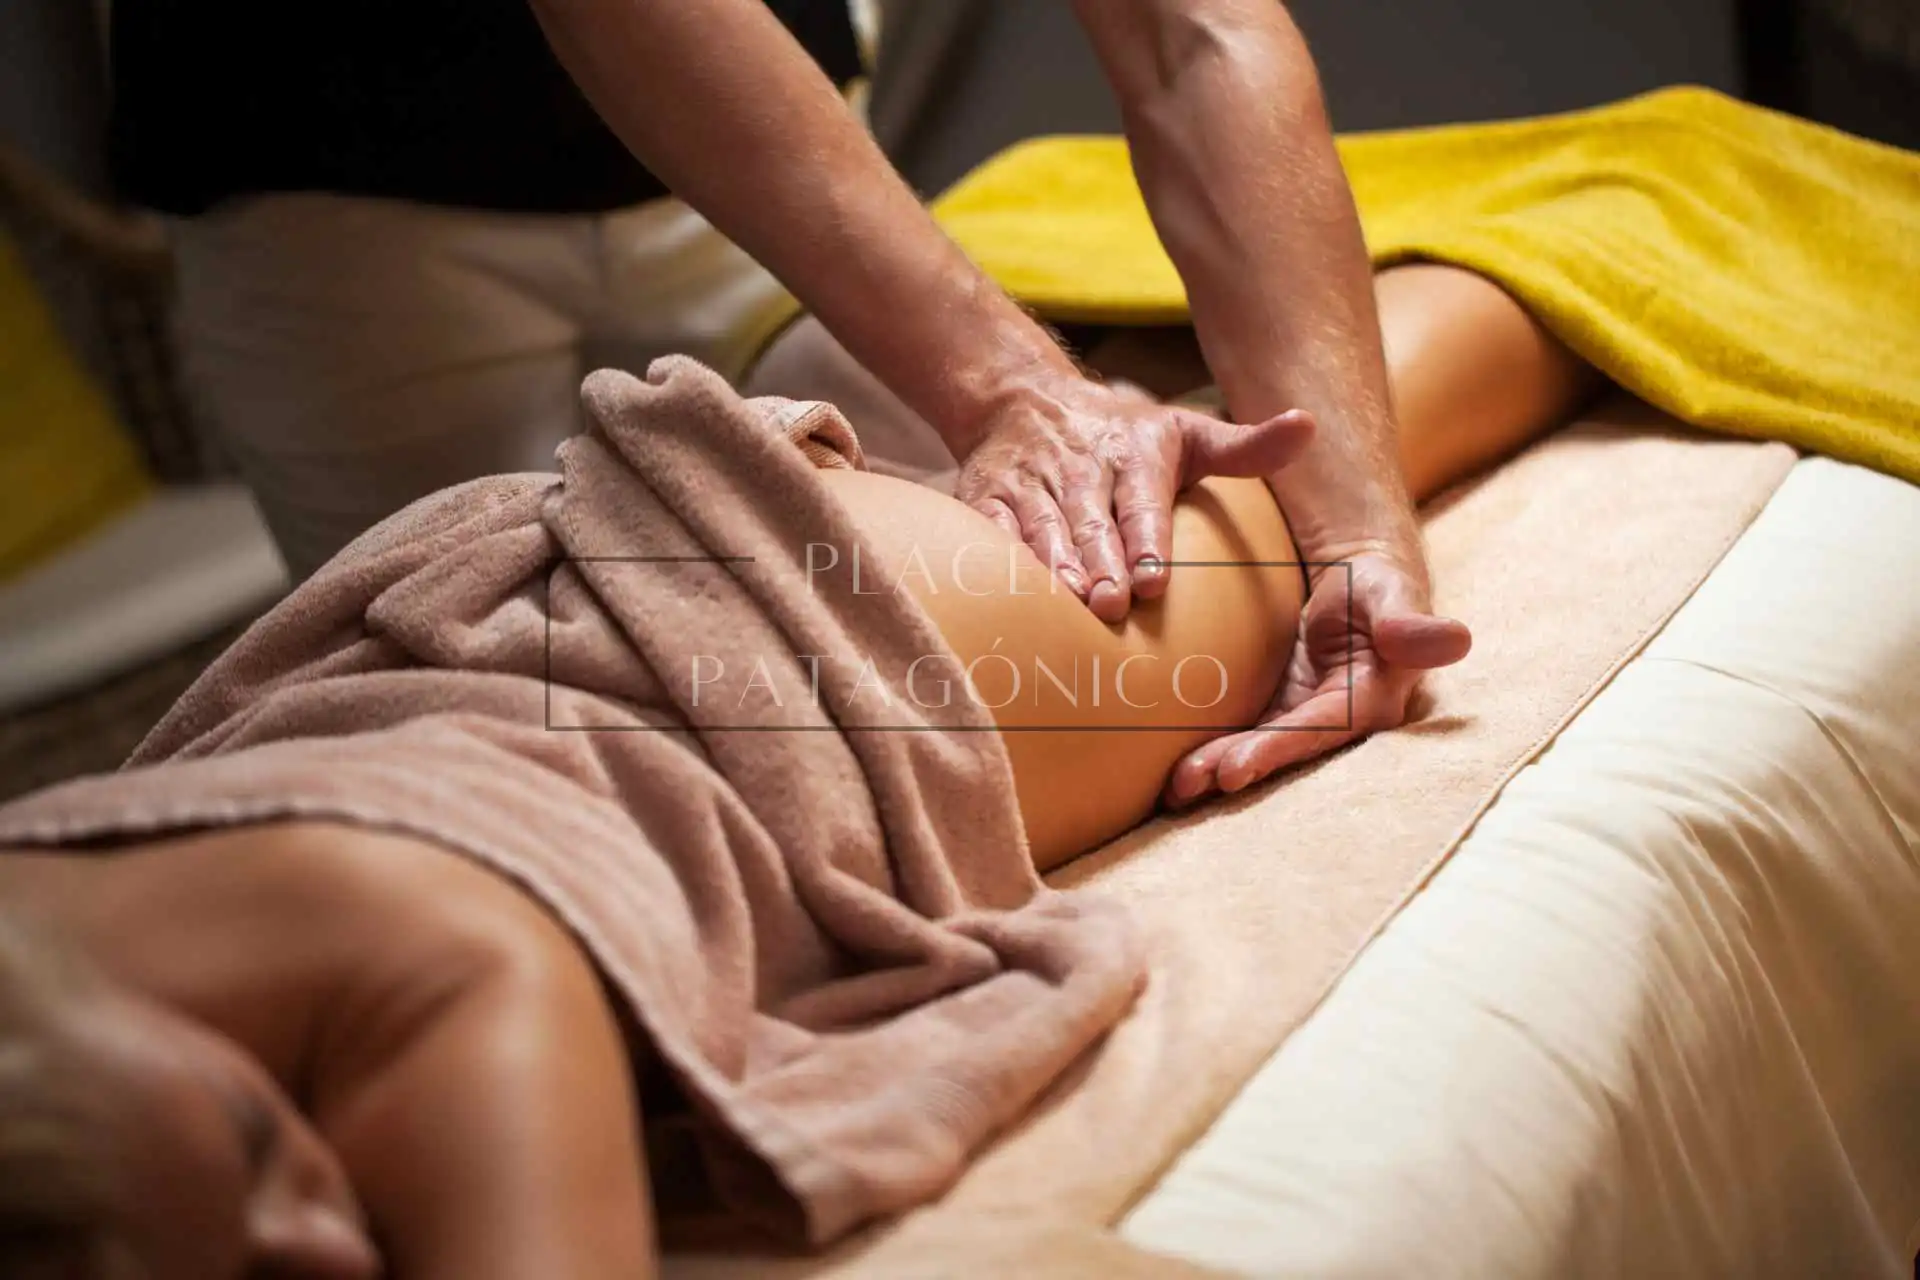 Mujer disfrutando de un masaje tántrico en manos masculinas